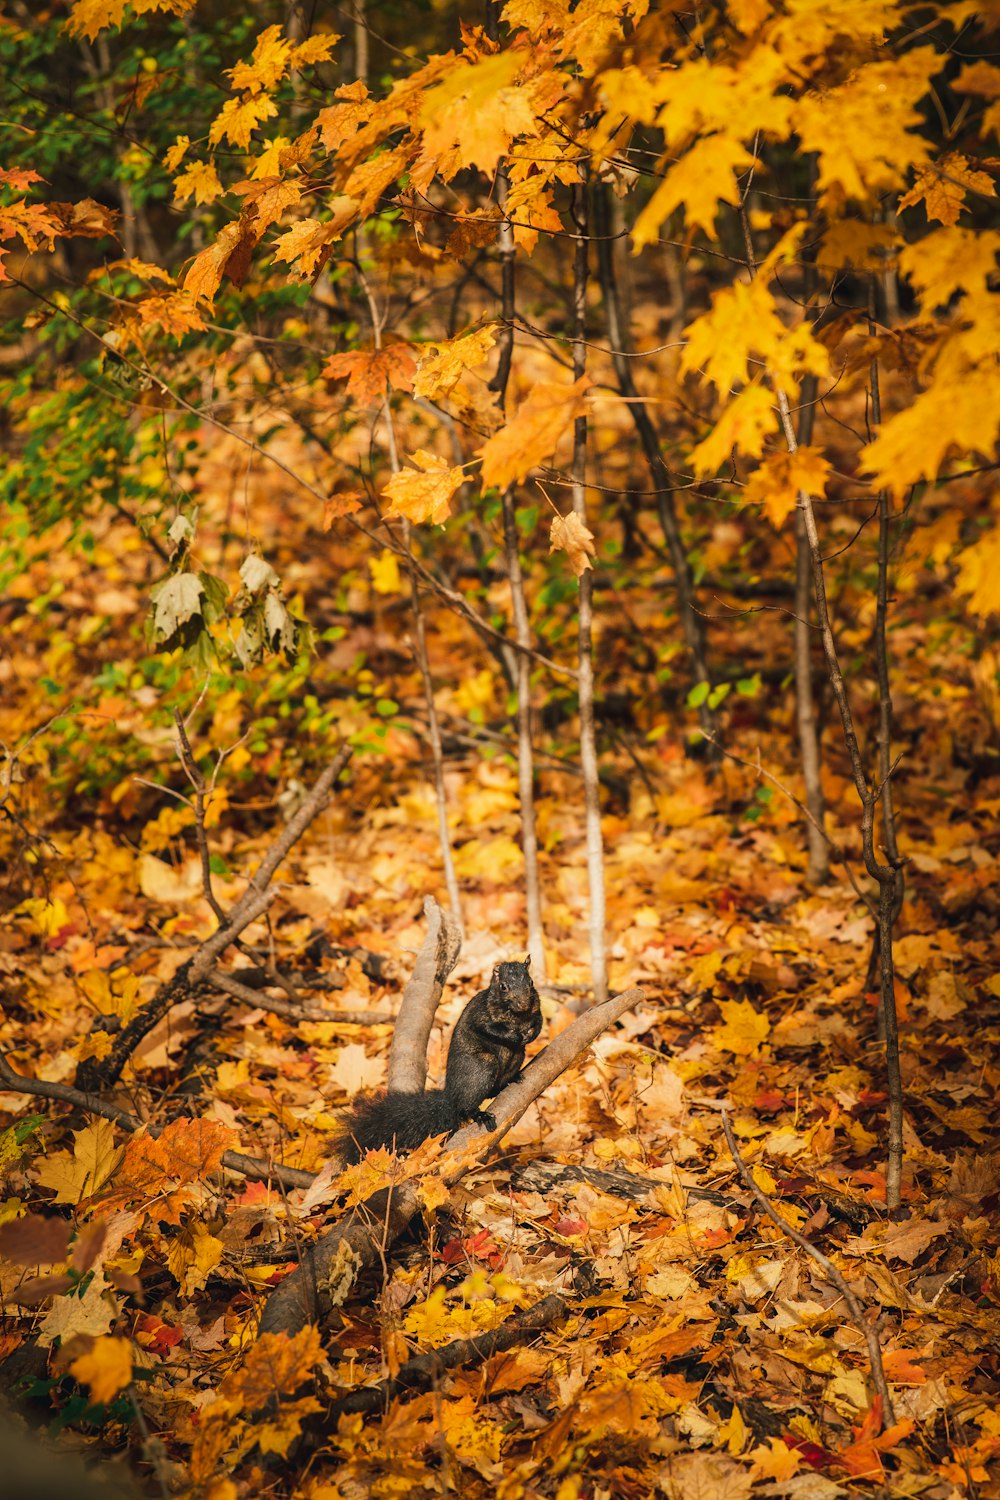 brown tabby cat on brown dried leaves